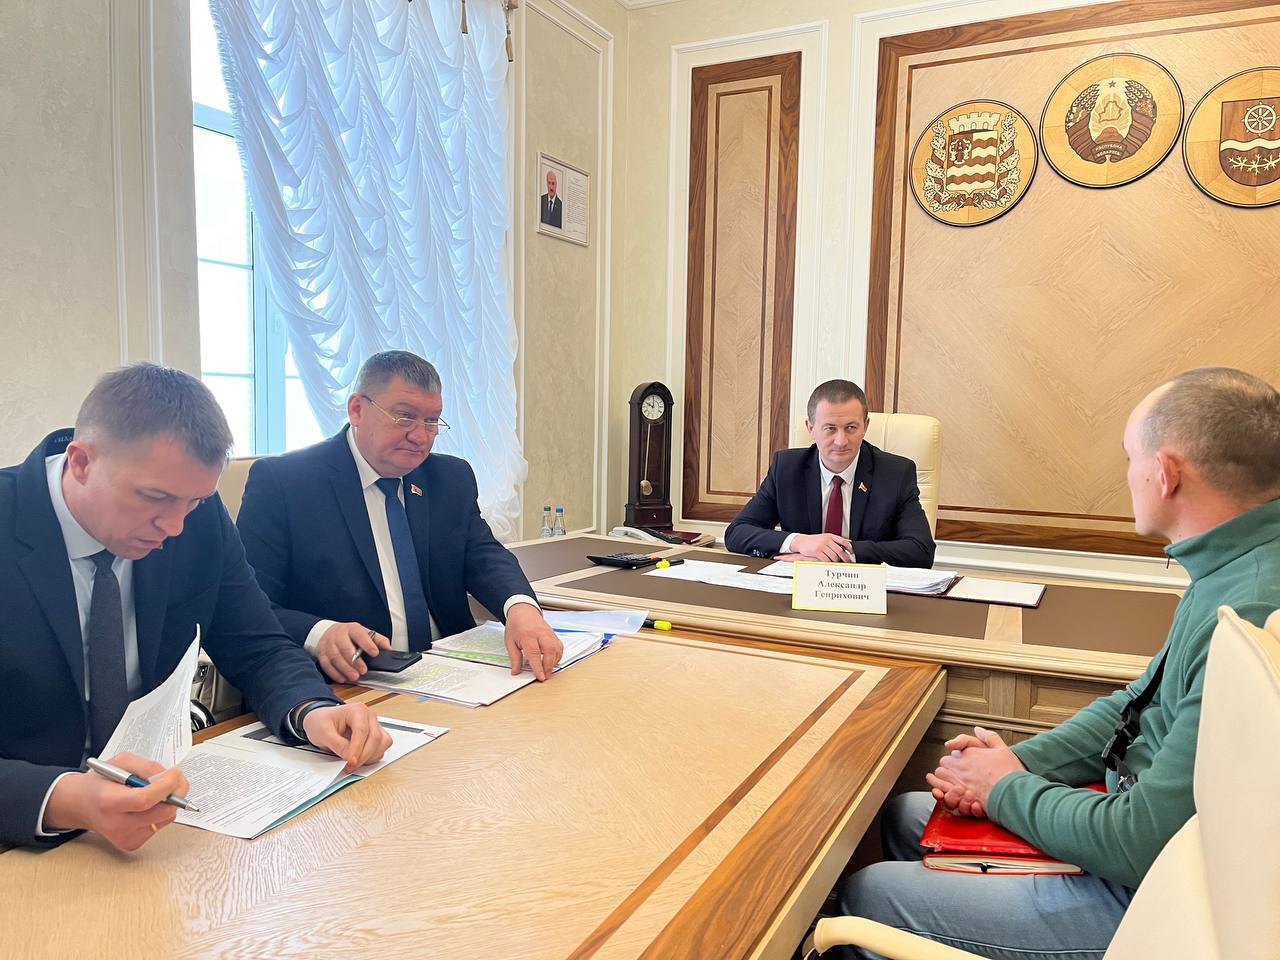 Александр Турчин: "Надо поддержать человека". Председатель Минского облисполкома проводит личный прием граждан в Крупках